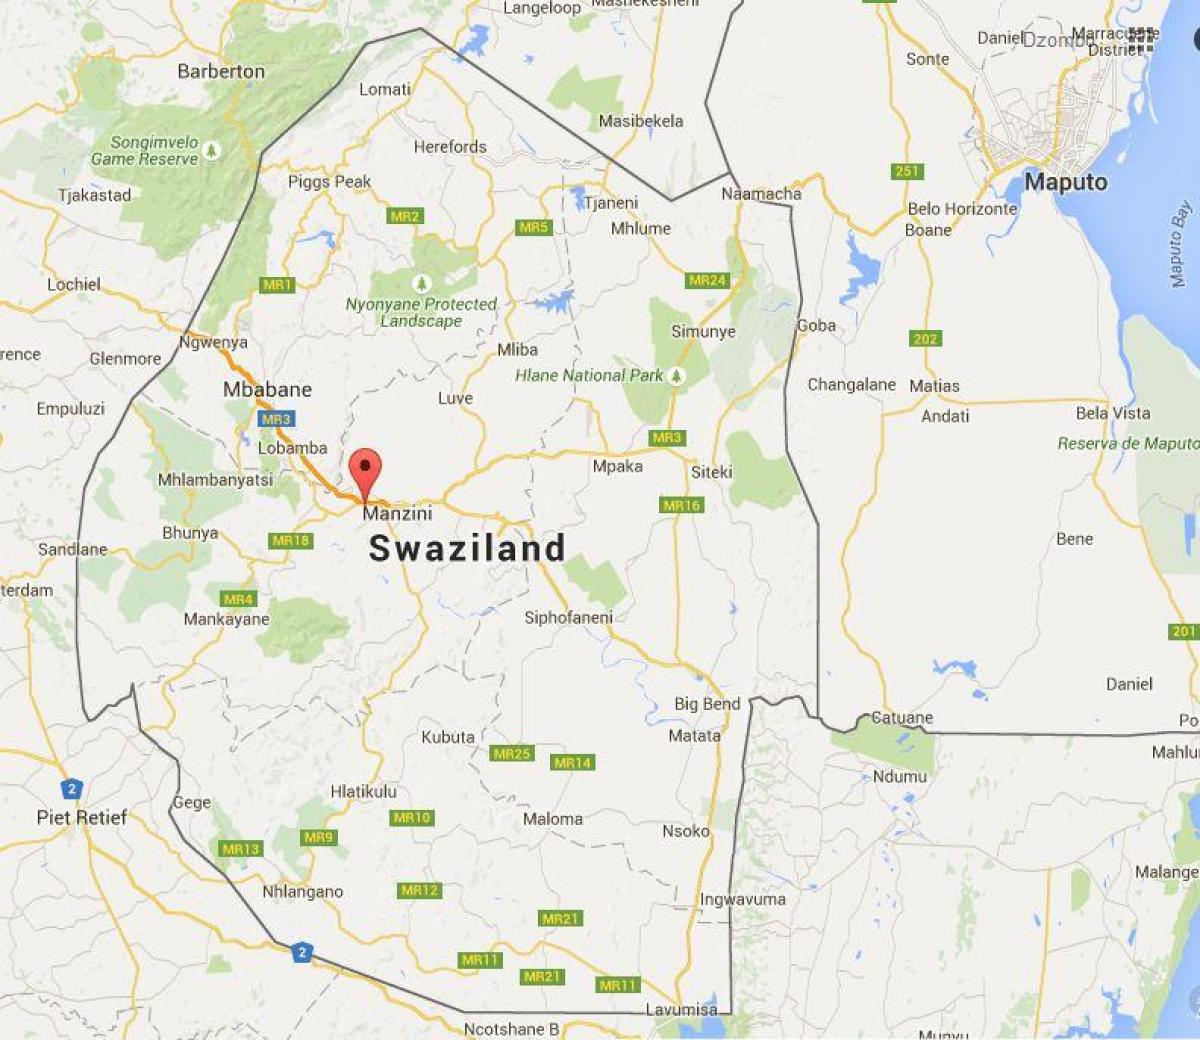 Peta dari Swaziland matsapha